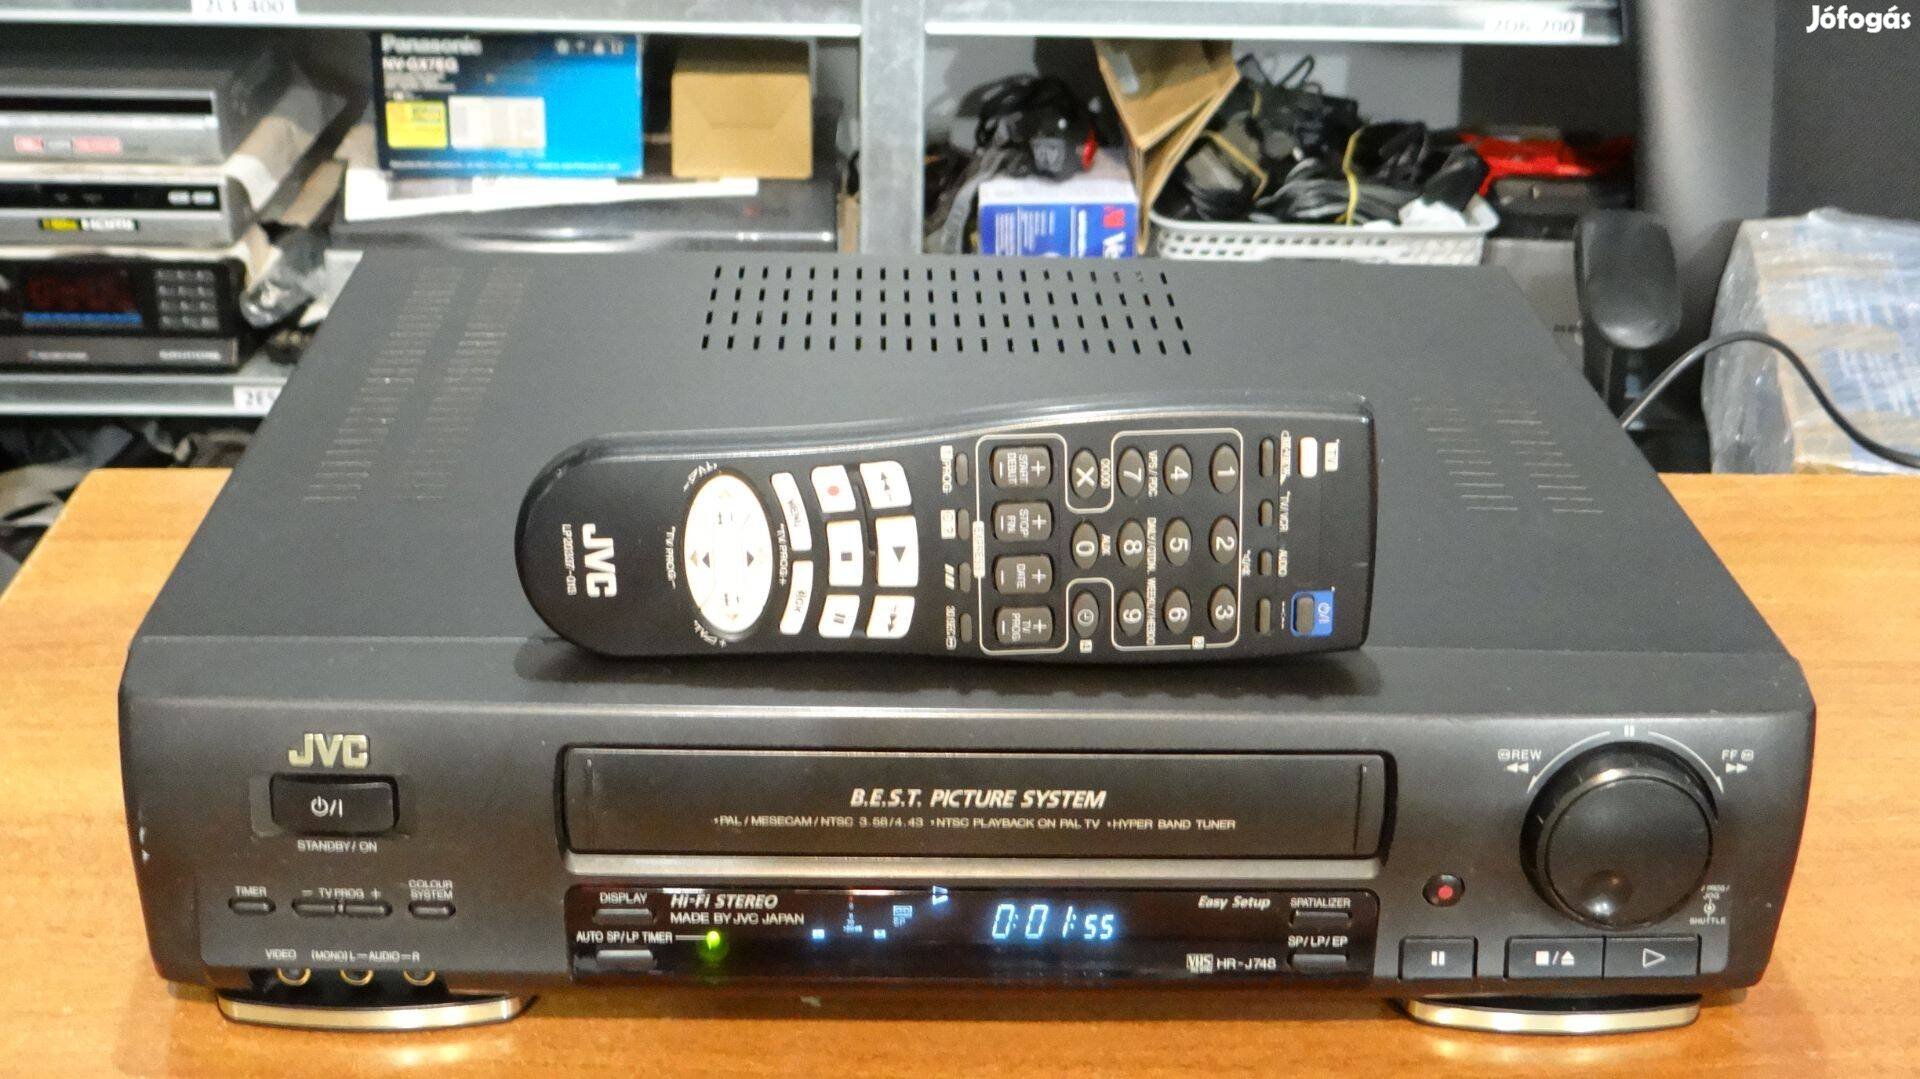 JVC HR-J748 Hi-Fi Stereo VHS Recorder